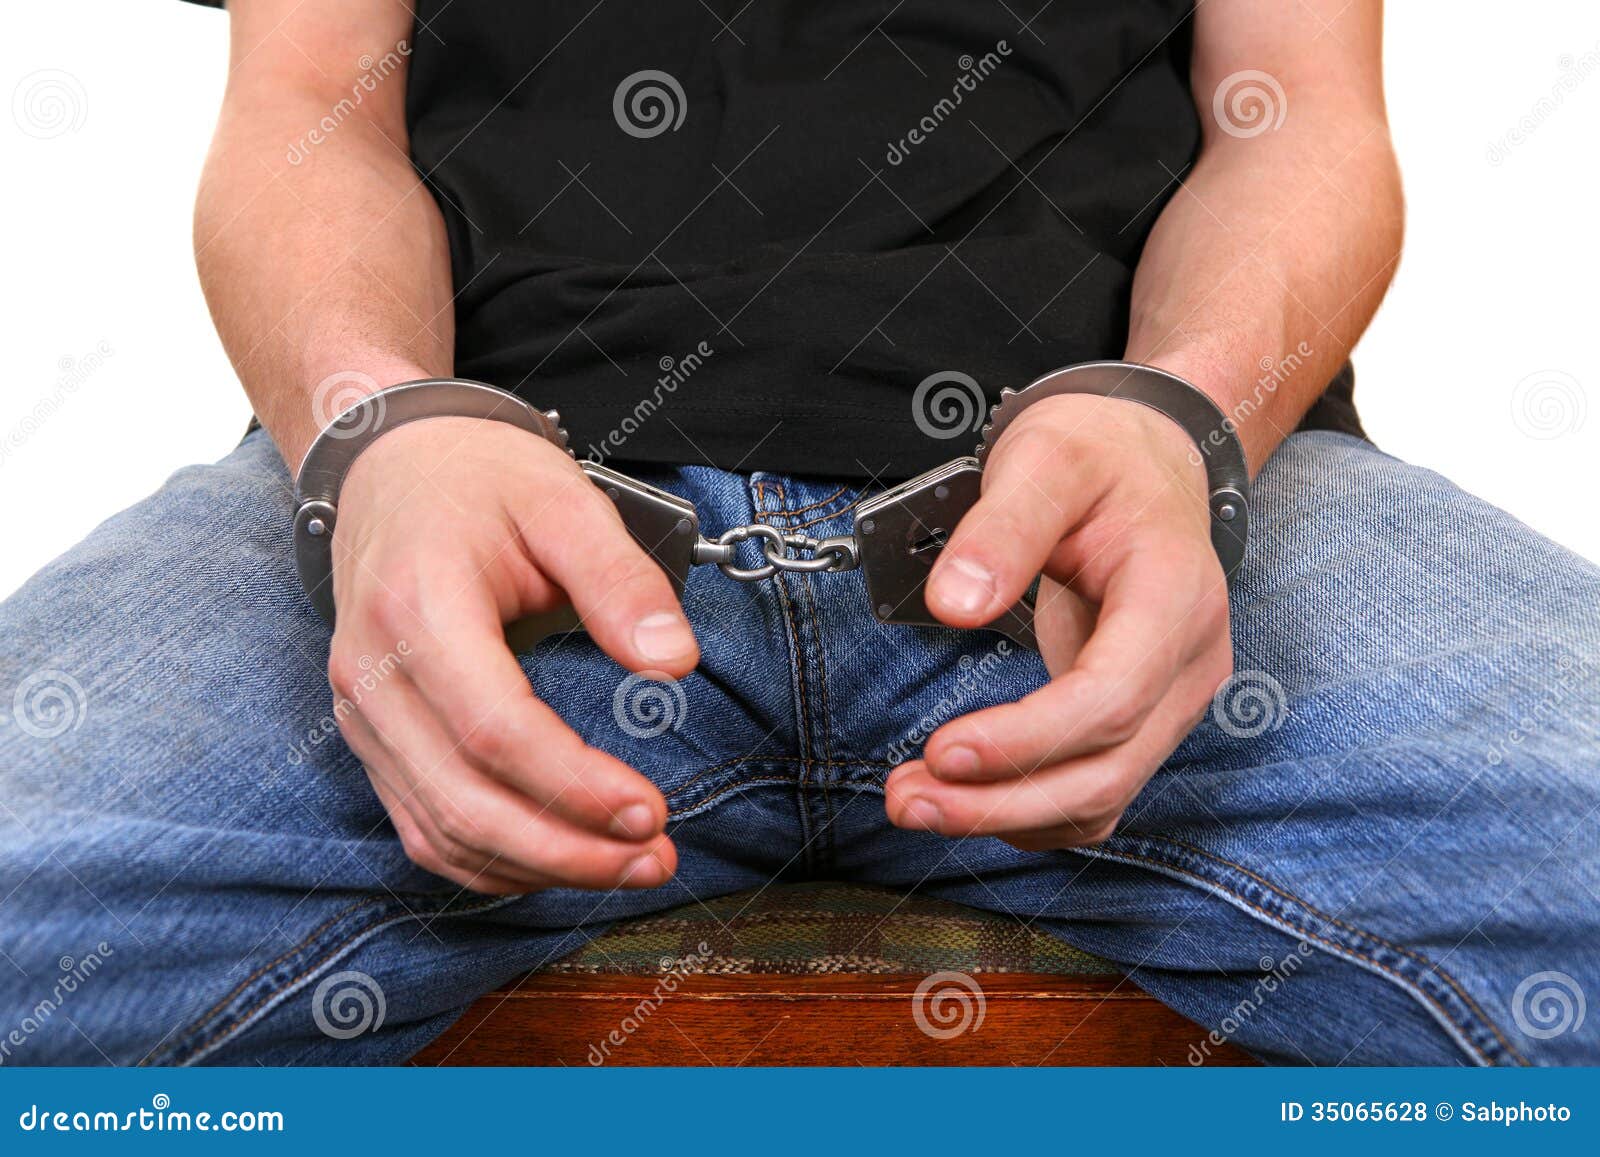 Парень надевает наручники. Наручники на джинсах. На мужика надели наручники. Наручники крупным планом. Мужчина в наручниках и в джинсах.